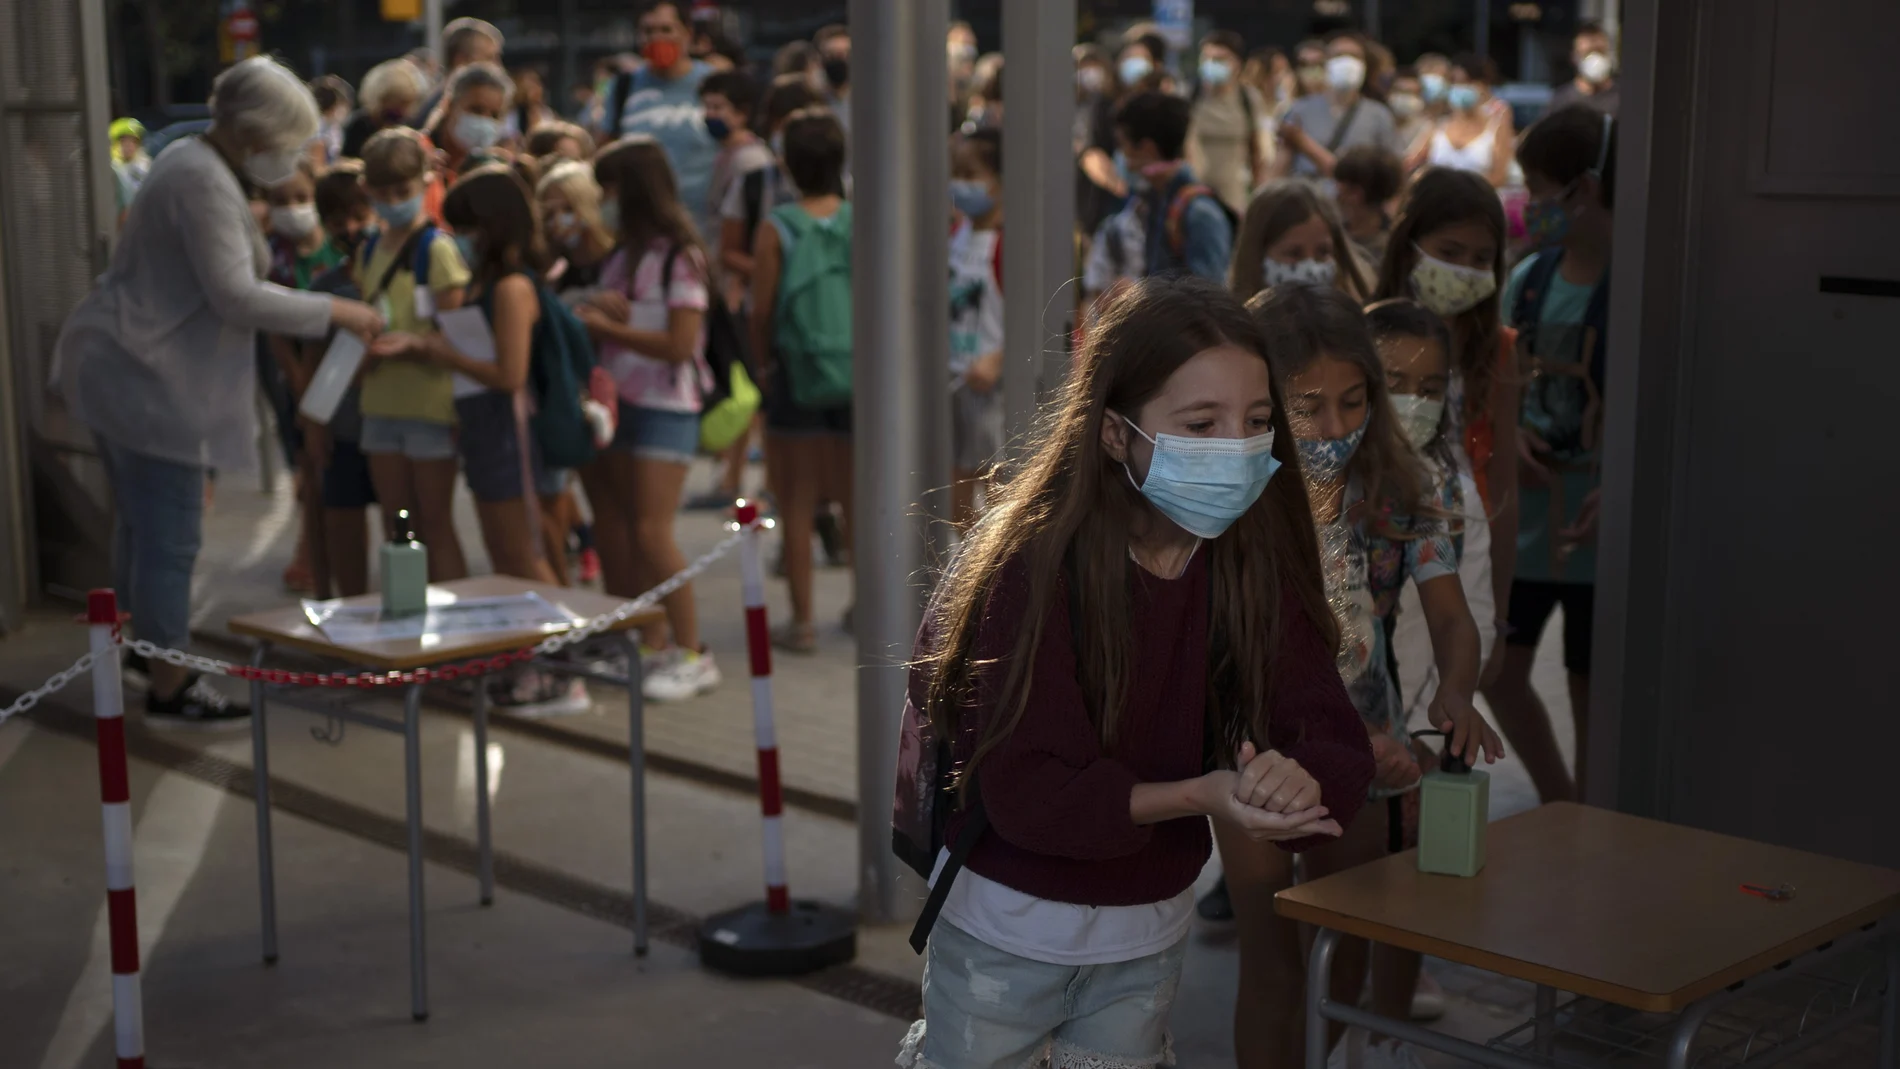 Los últimos alumnos del país vuelven al colegio después de seis meses con nuevas medidas para minimizar los contagios. (AP Photo/Emilio Morenatti)